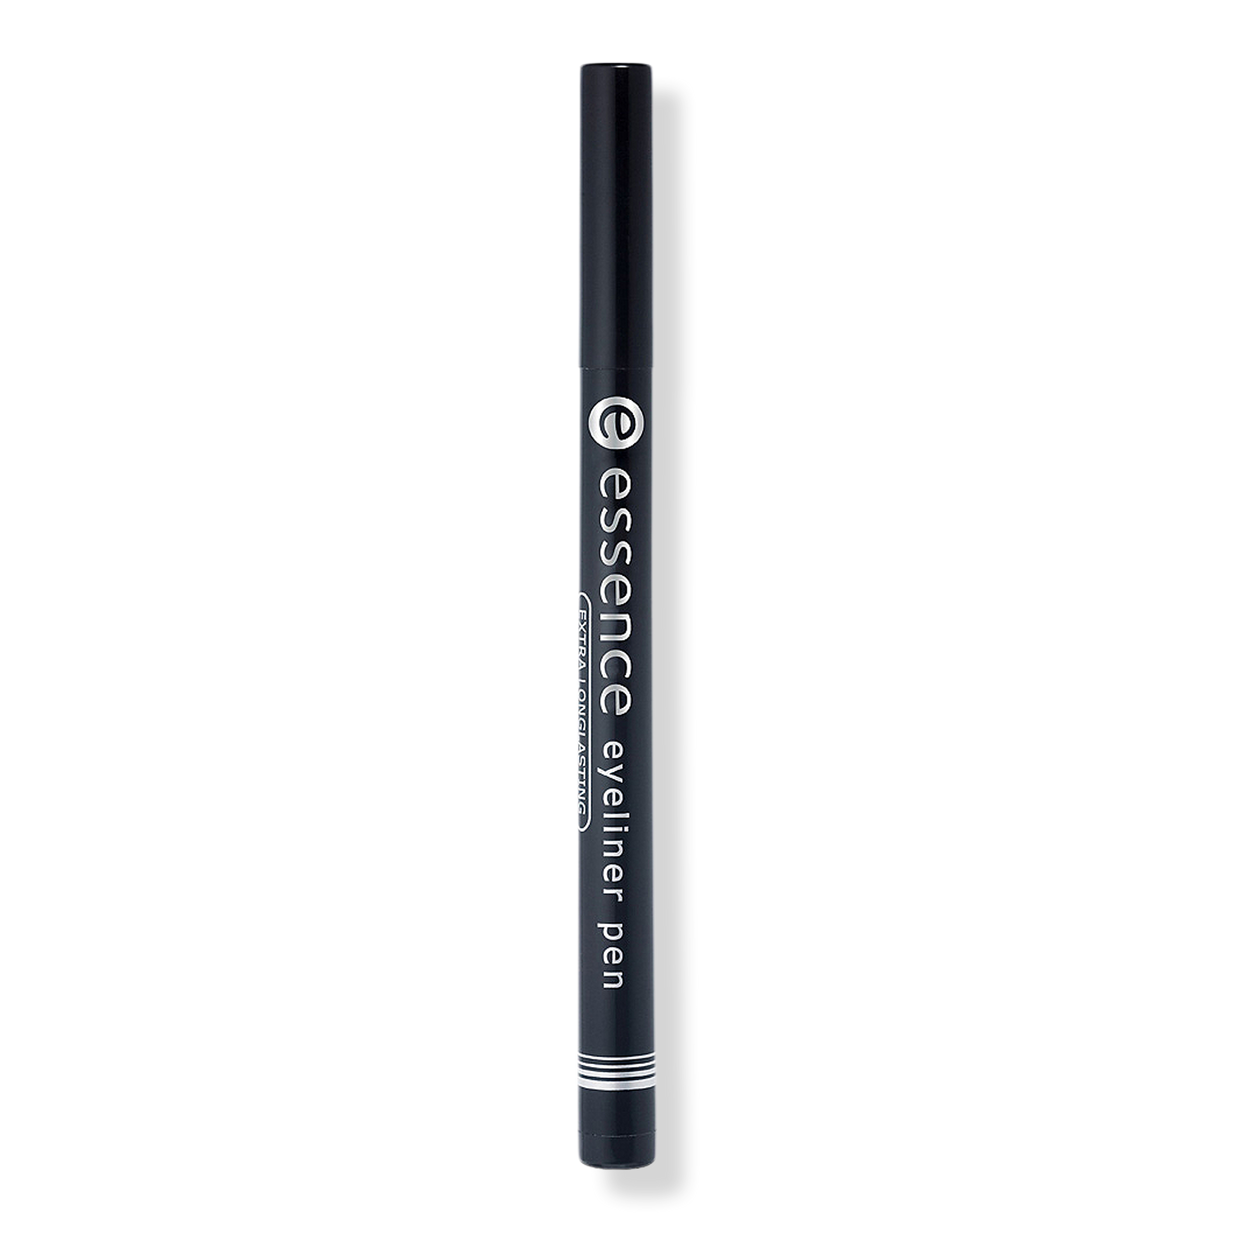 Eyeliner Pen - Essence | Ulta Beauty